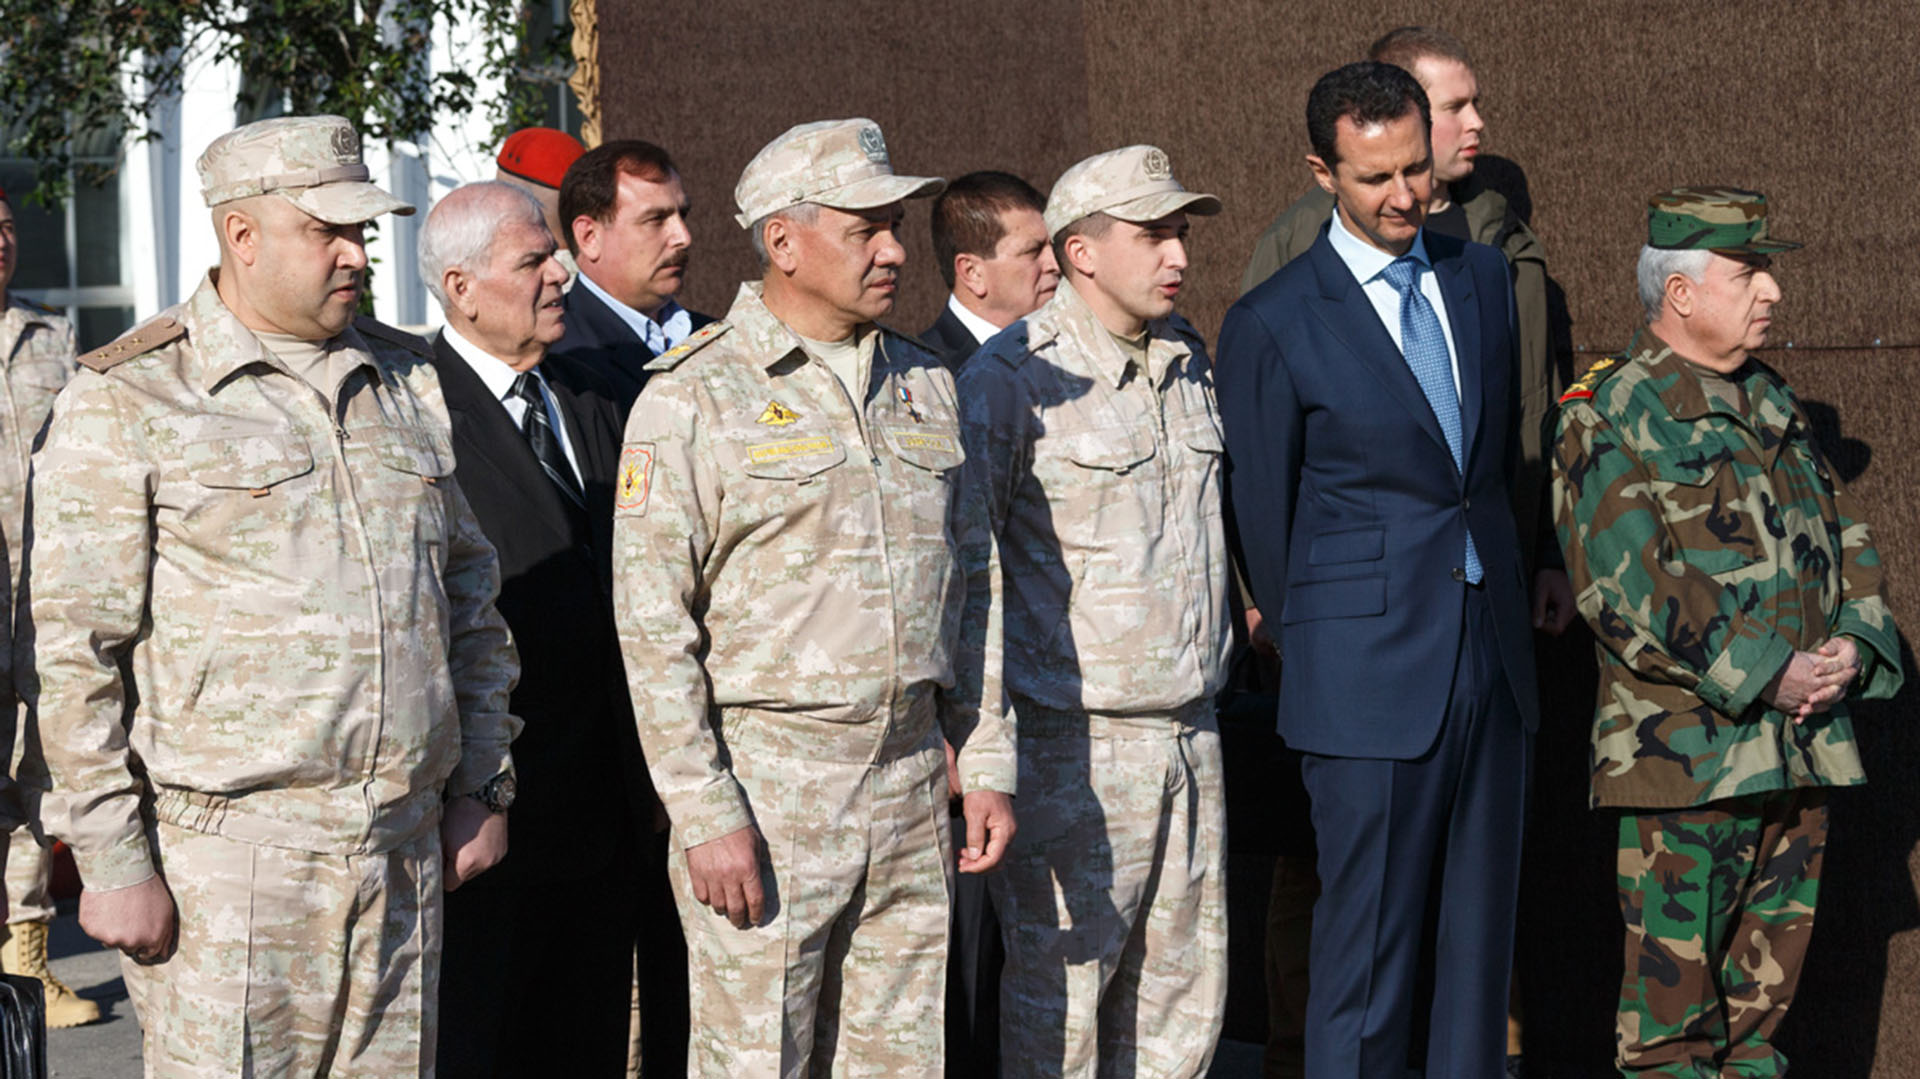 Surovikin (izquierda) con el ministro de Defensa Sergey Shoigu, Bashar al Assad y el ministro de Defensa sirio Ali Ayyoub en 2017.
(mil.ru/Wikipedia)